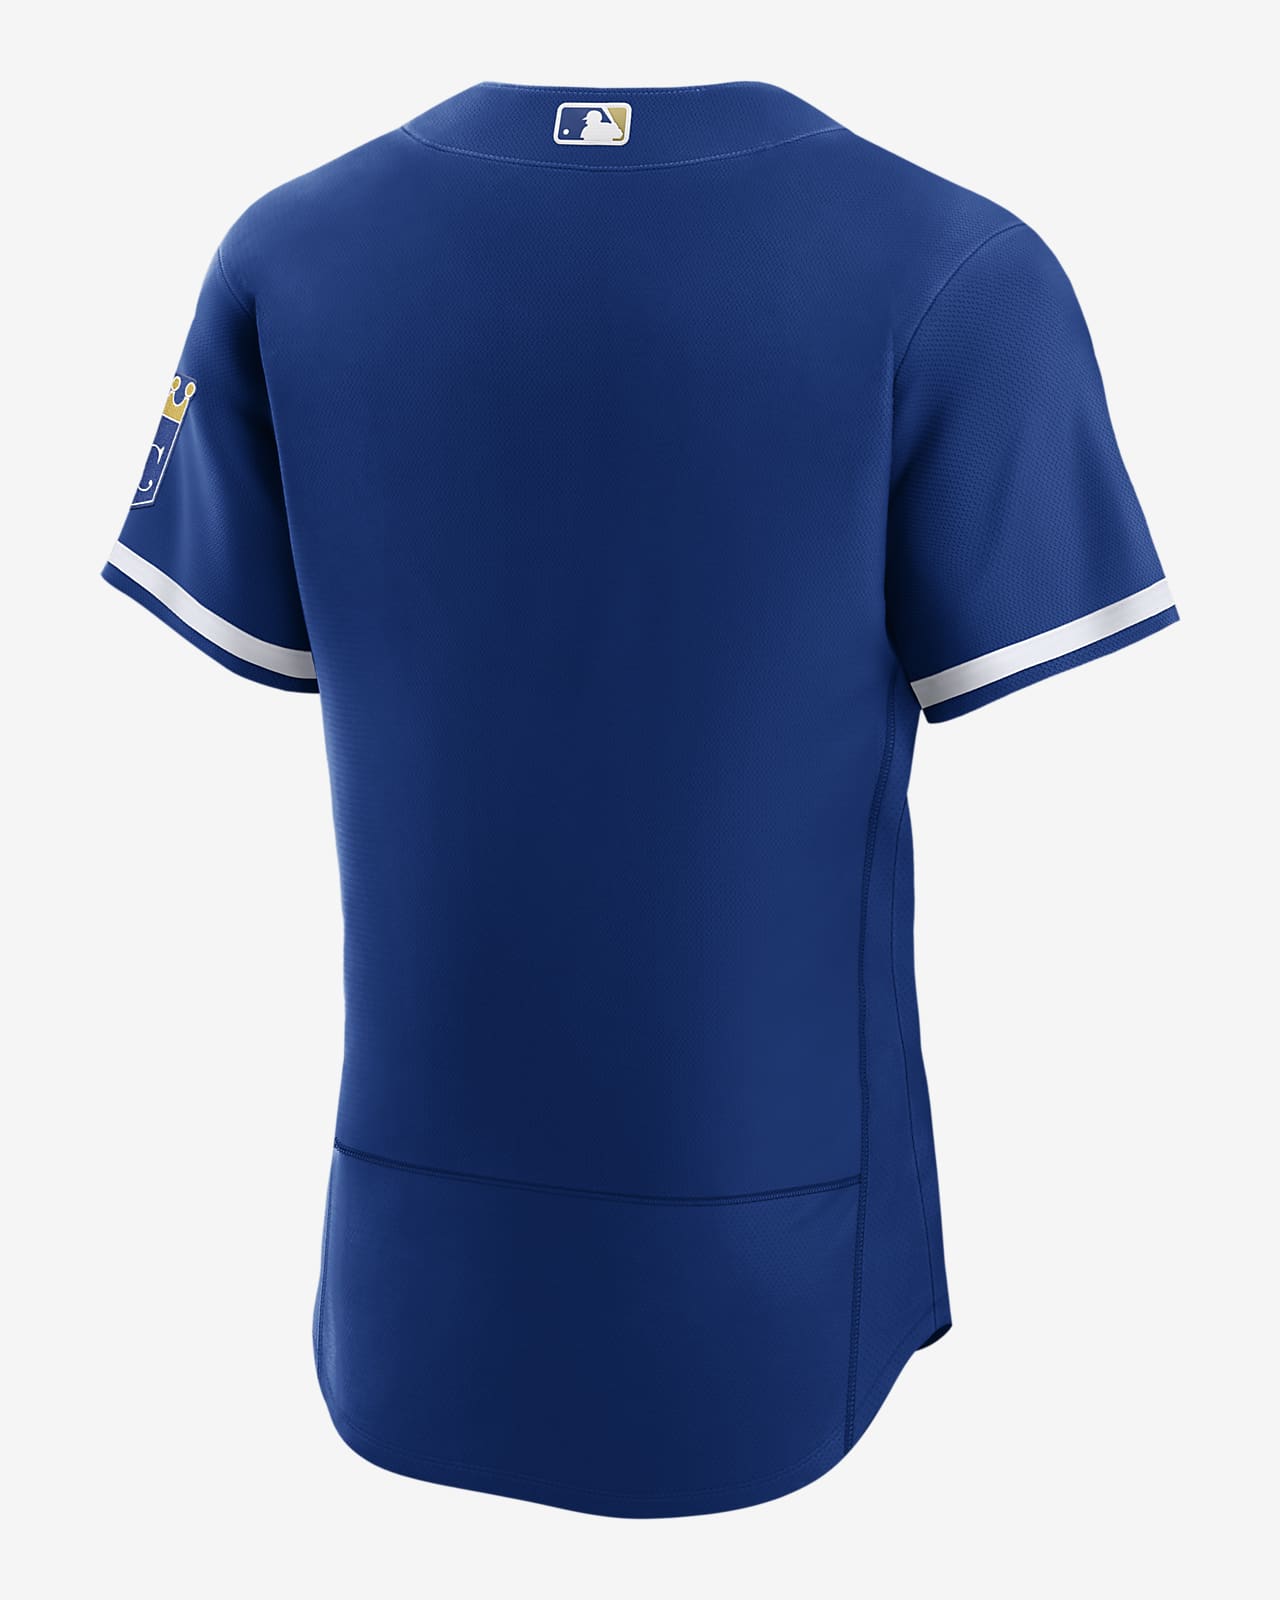 royal blue baseball uniforms